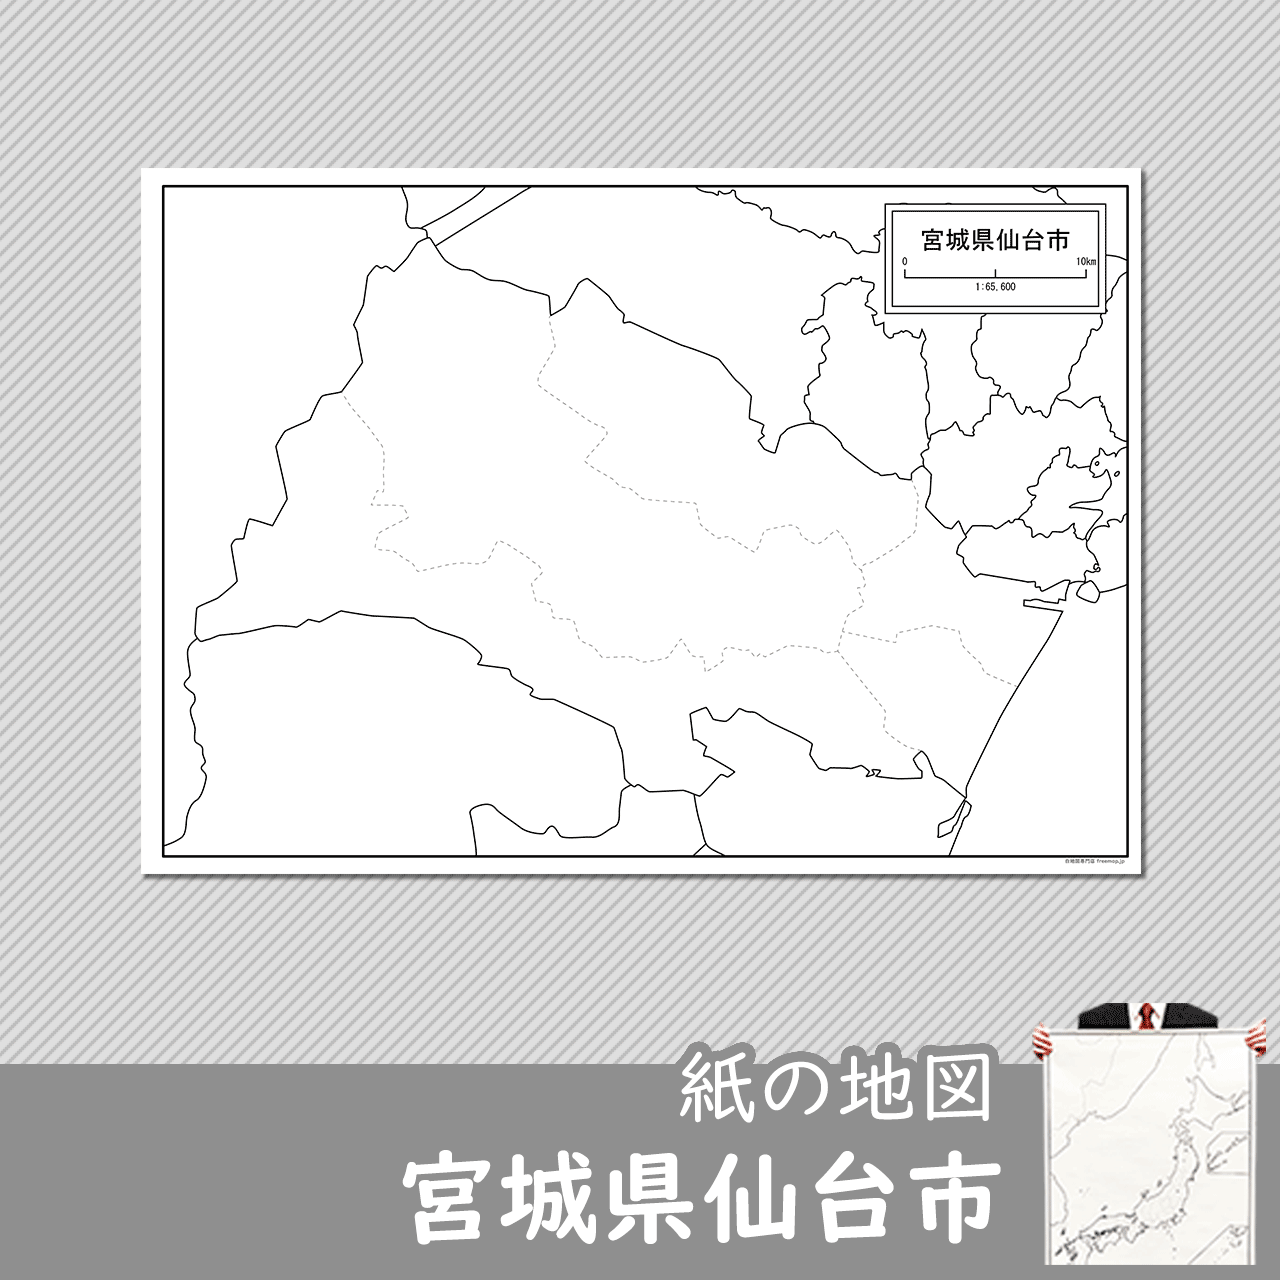 仙台市の紙の白地図のサムネイル